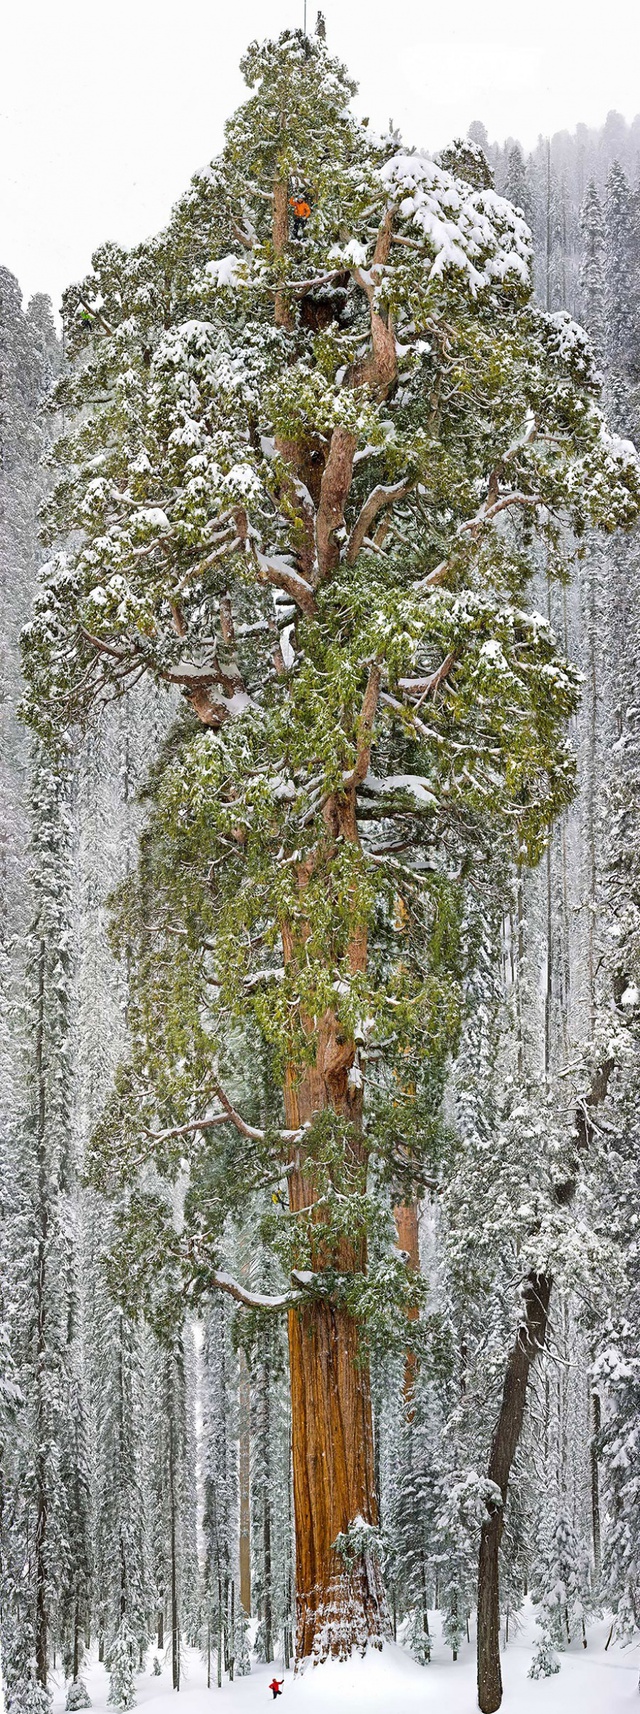  Cây Sequoia có tên President, 3.200 năm tuổi cao khoảng 75m, tương đương một tòa nhà 20 tầng, nằm ở vườn quốc gia Sequoia, California, Mỹ. Đây là cây cổ thụ lớn thứ 3 trên thế giới khi sở hữu độ cao chọc trời và có gần 2 tỷ lá. Cây President là một trong những kỳ quan nổi tiếng của Mỹ (Ảnh: Michael Nichols) 